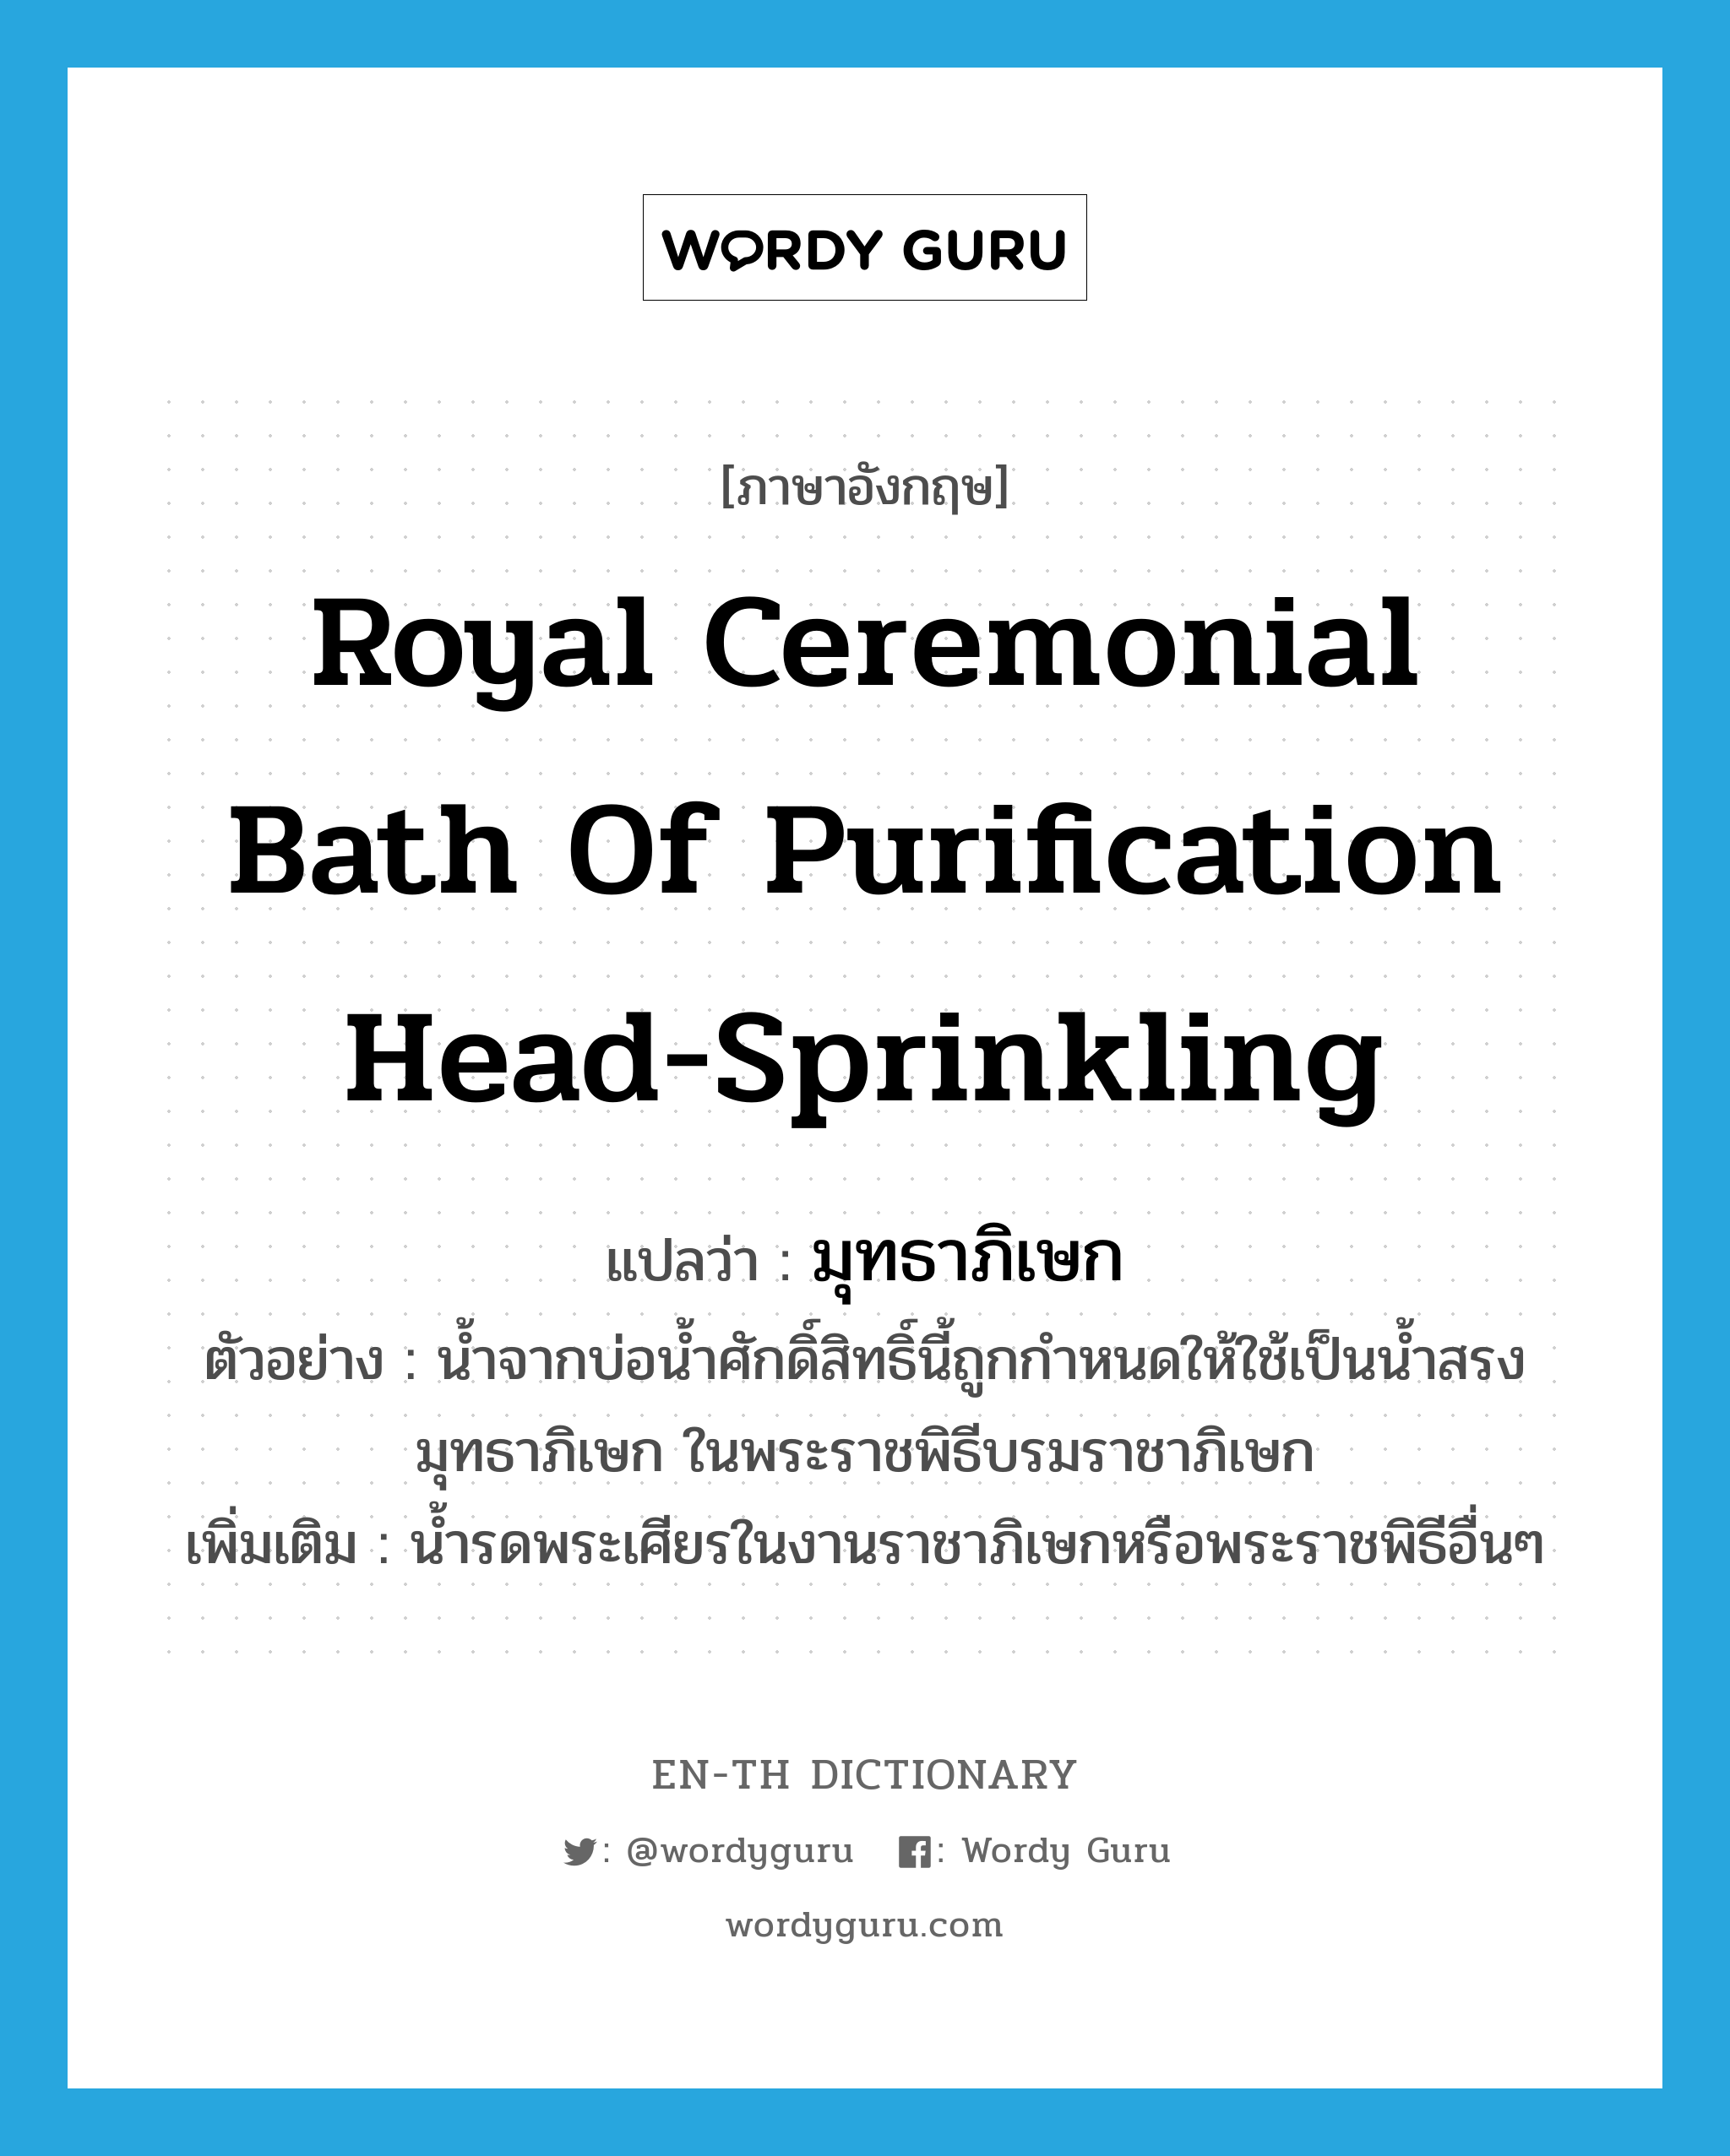 มุทธาภิเษก ภาษาอังกฤษ?, คำศัพท์ภาษาอังกฤษ มุทธาภิเษก แปลว่า Royal ceremonial bath of purification head-sprinkling ประเภท N ตัวอย่าง น้ำจากบ่อน้ำศักดิ์สิทธิ์นี้ถูกกำหนดให้ใช้เป็นน้ำสรงมุทธาภิเษก ในพระราชพิธีบรมราชาภิเษก เพิ่มเติม น้ำรดพระเศียรในงานราชาภิเษกหรือพระราชพิธีอื่นๆ หมวด N